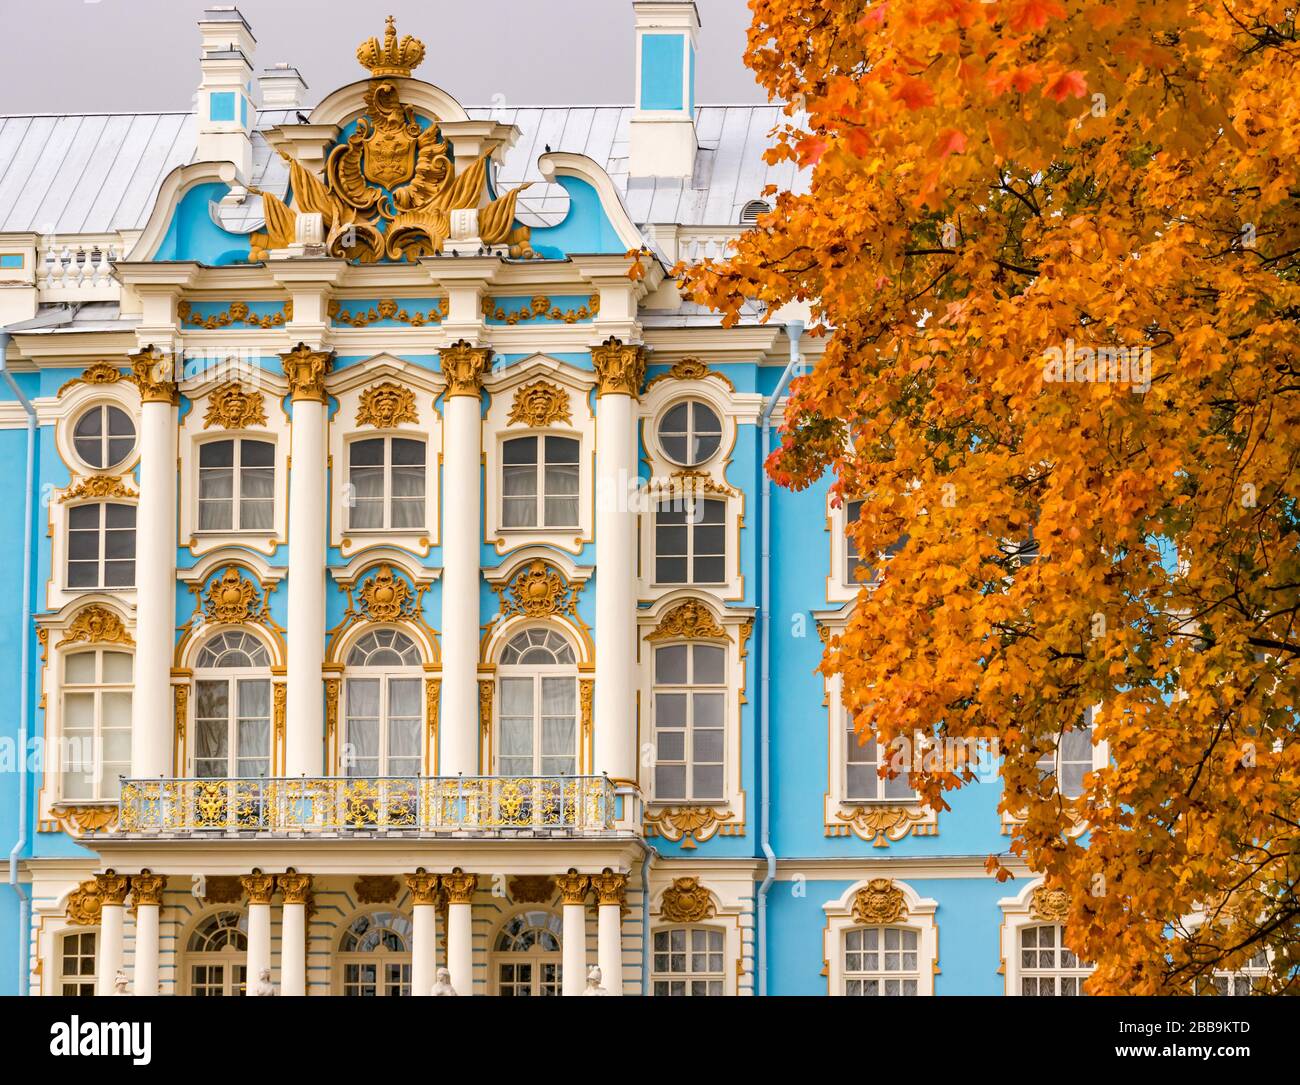 Catherine Palace Grand barocco rococò facciata con alberi d'autunno, Tsarars Village, Tsarskoe Selo, Pushkin, Federazione russa Foto Stock